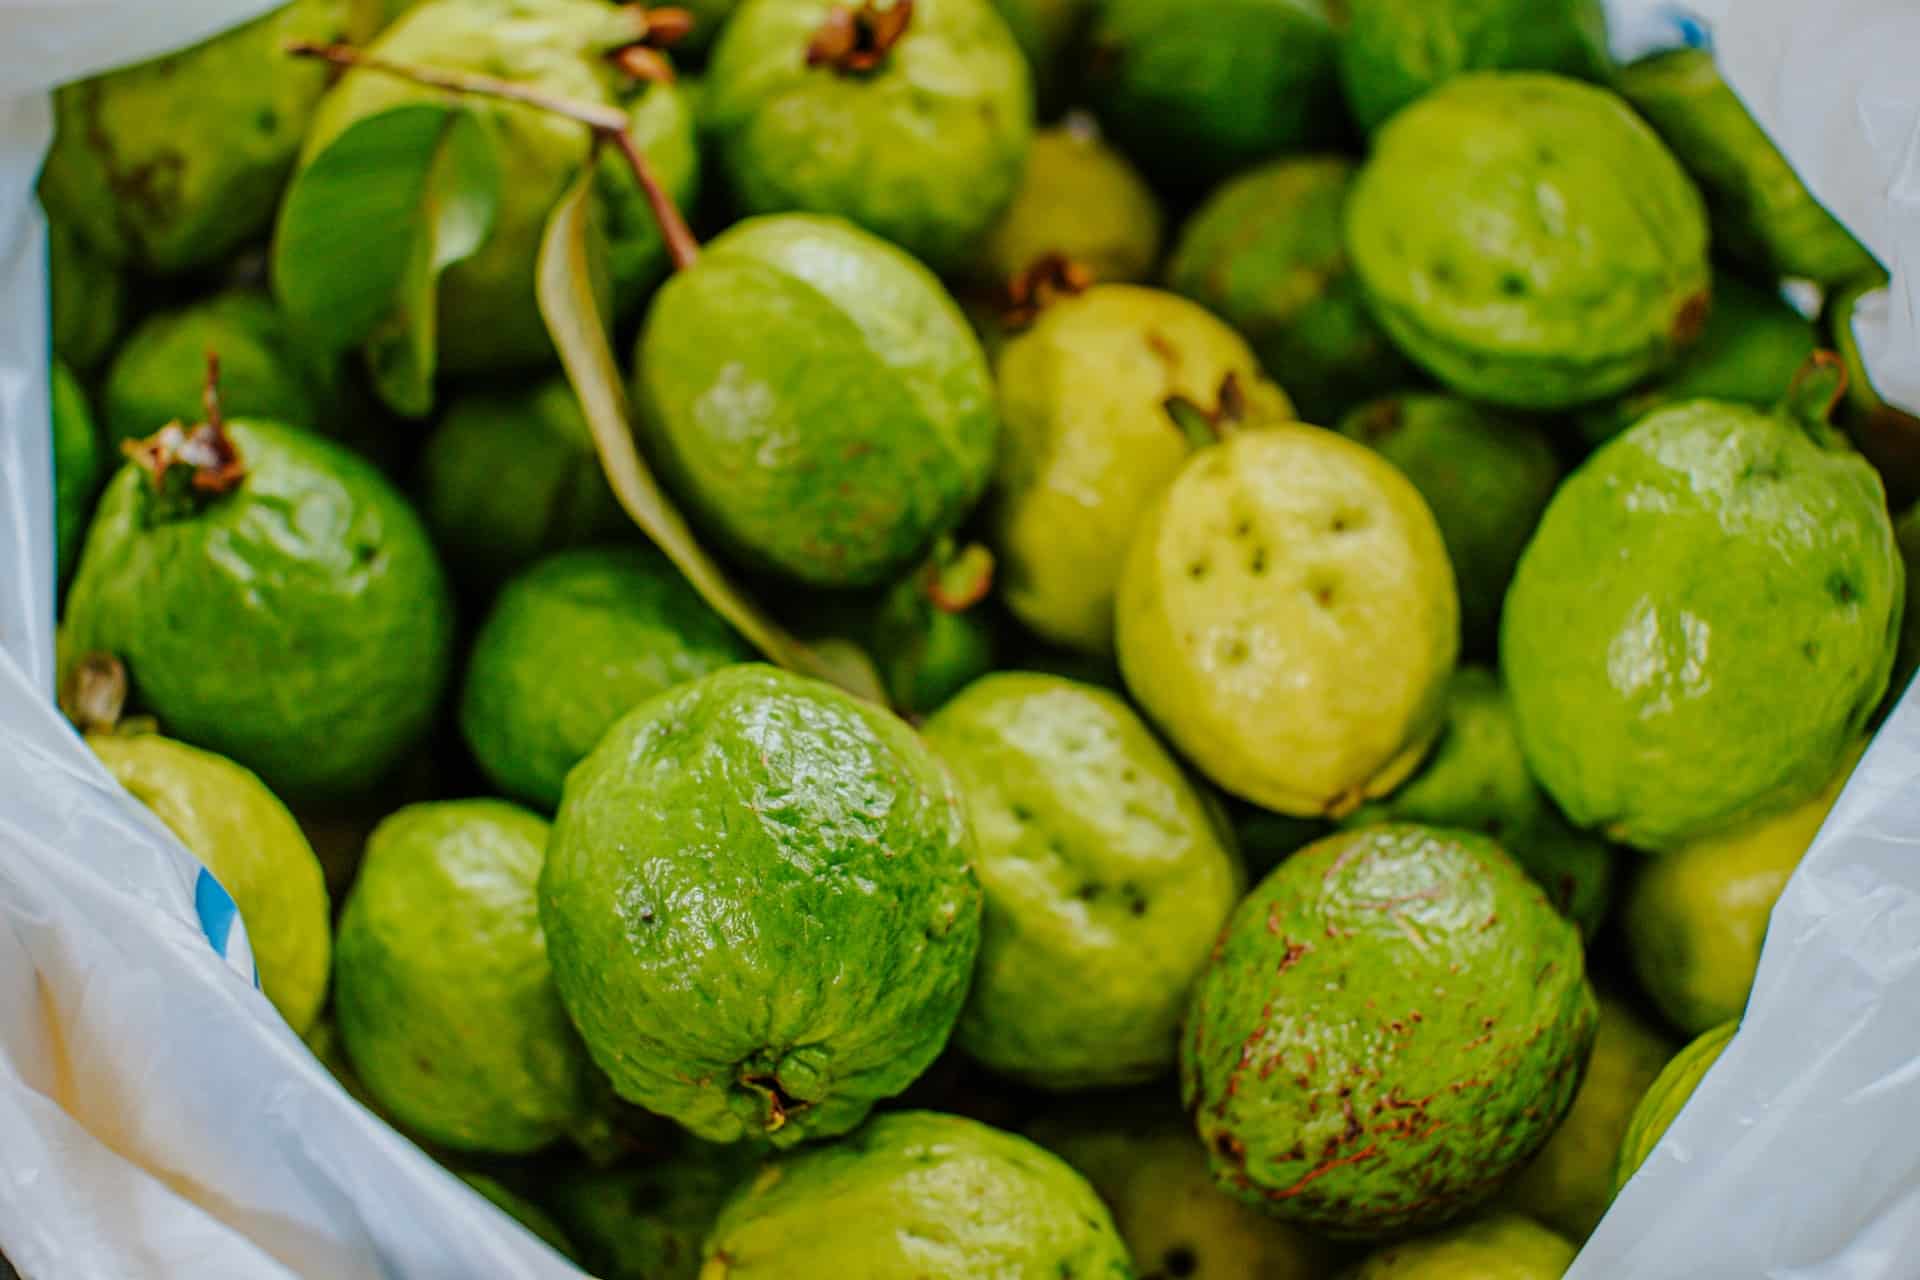 Guave Vorteile und Nährwerte